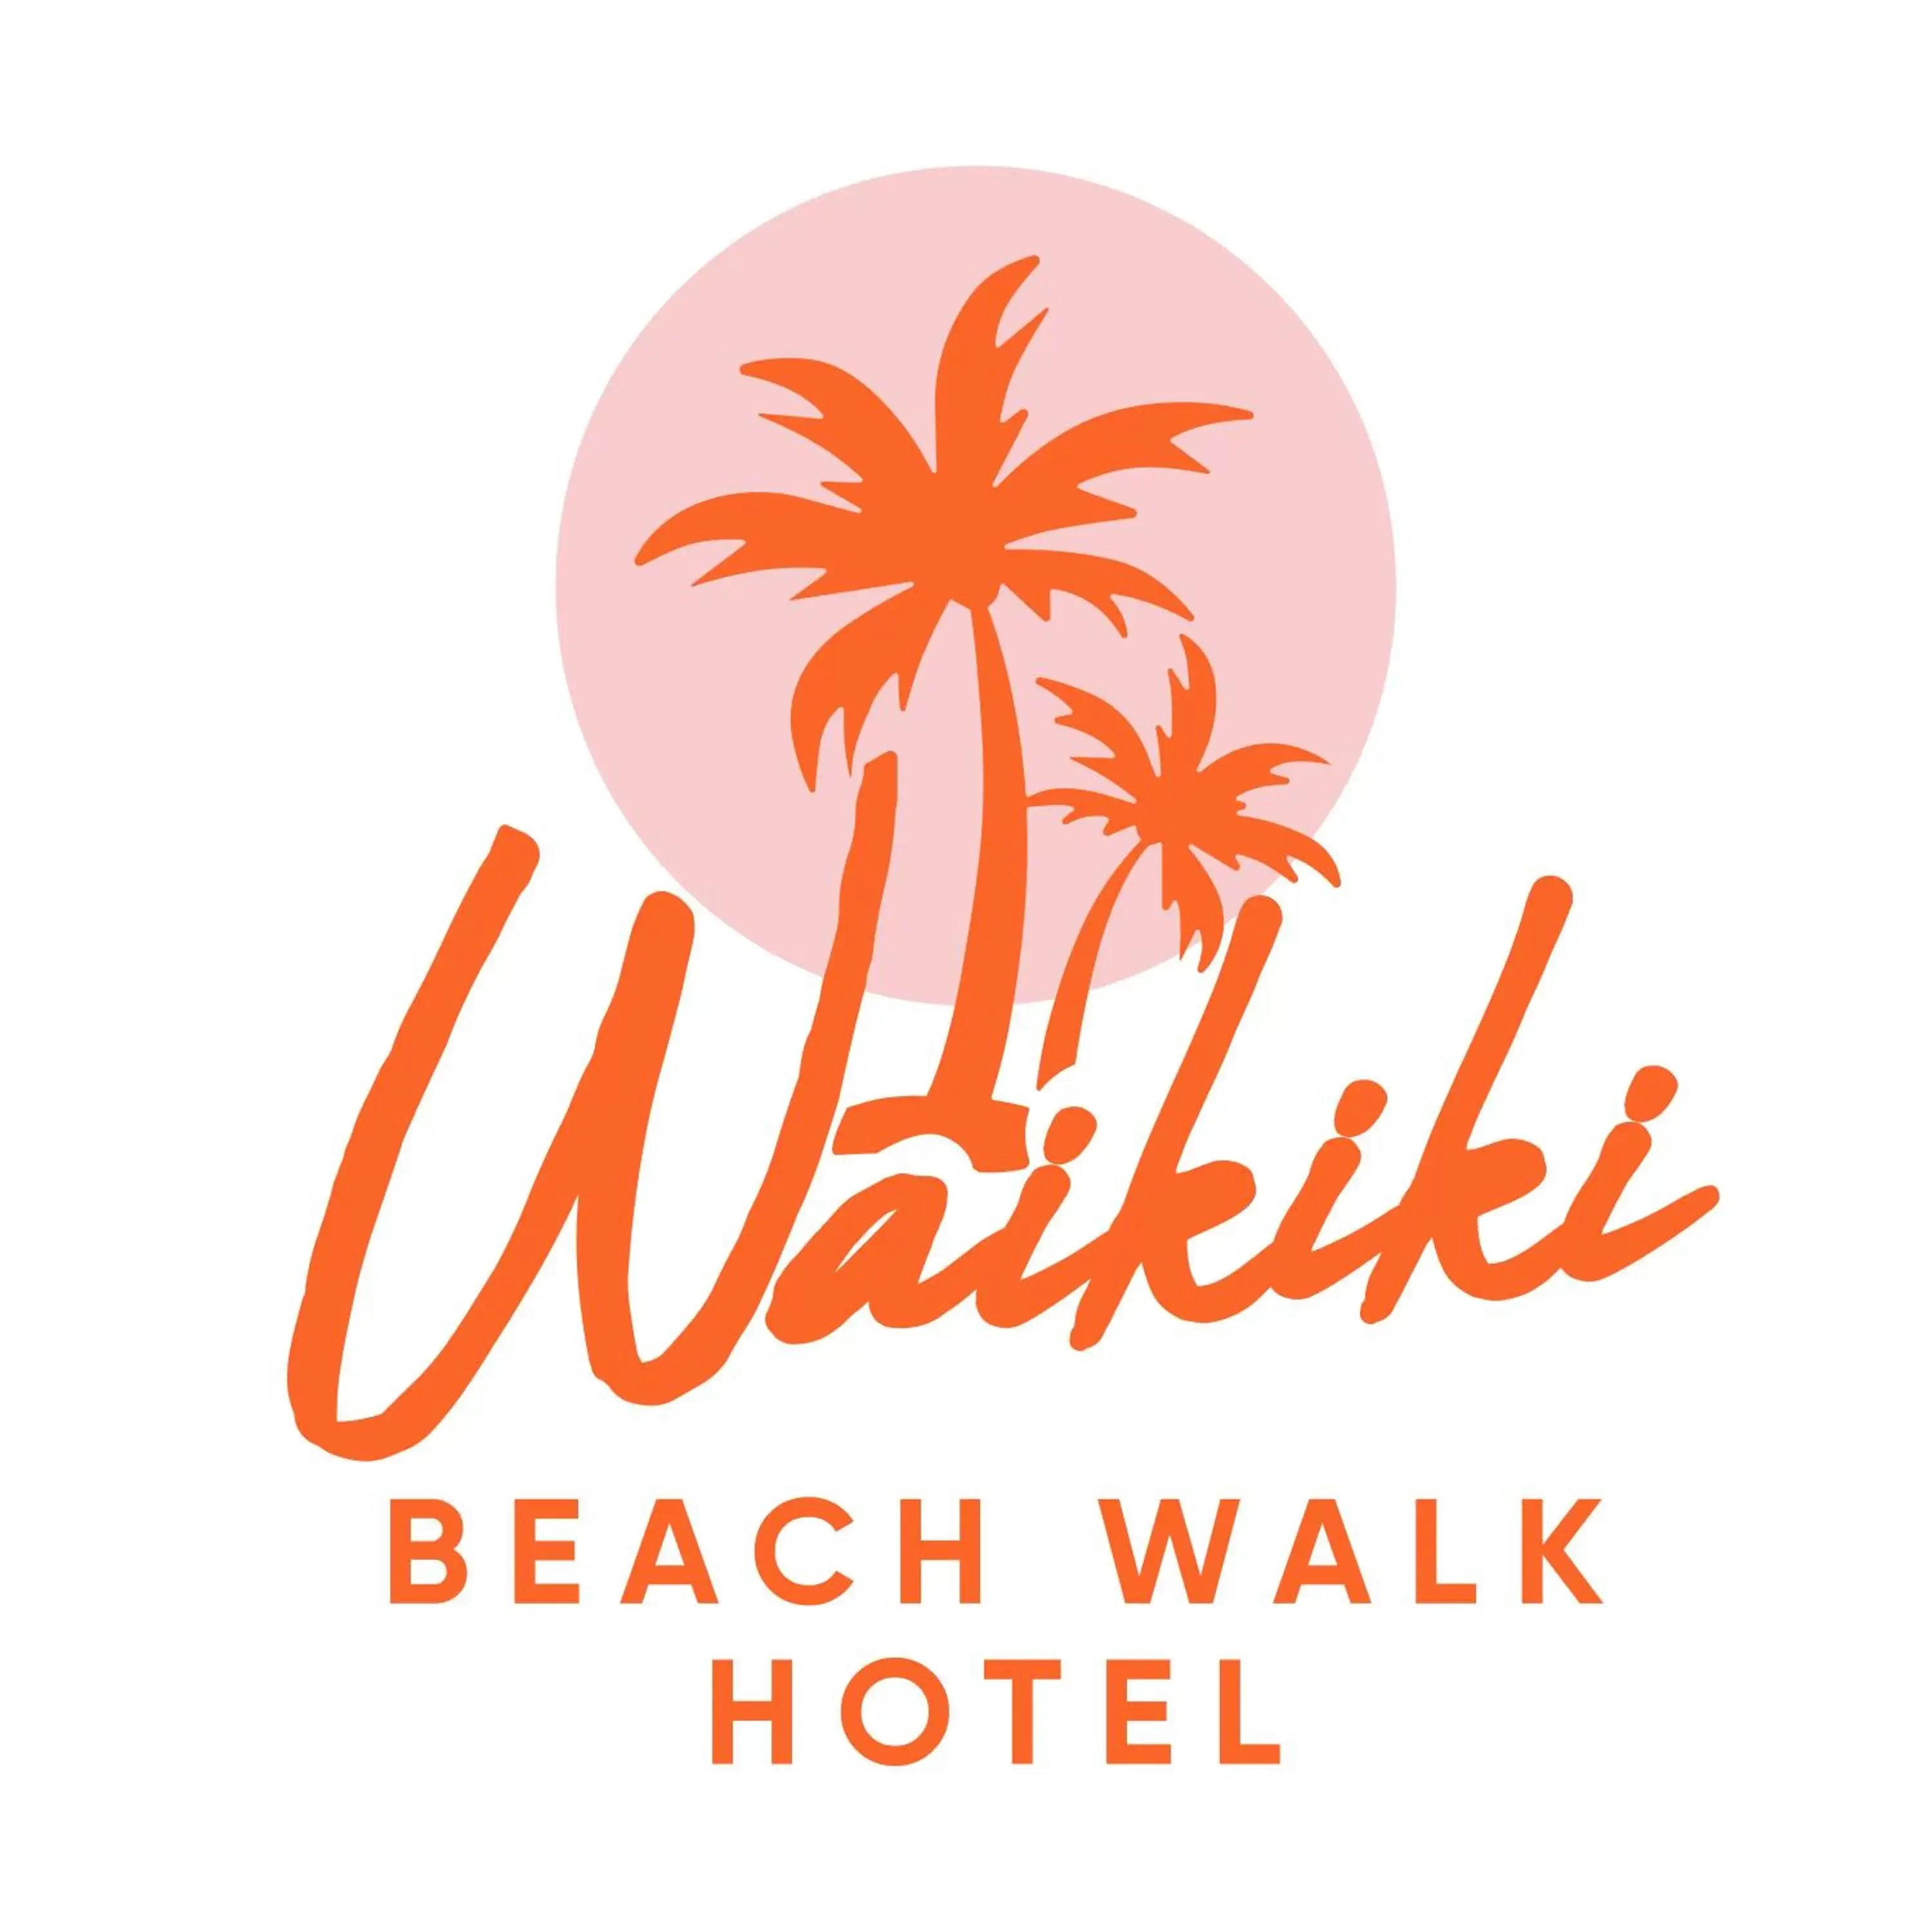 Logo/Certificate/Sign in Waikiki Heritage Hotel